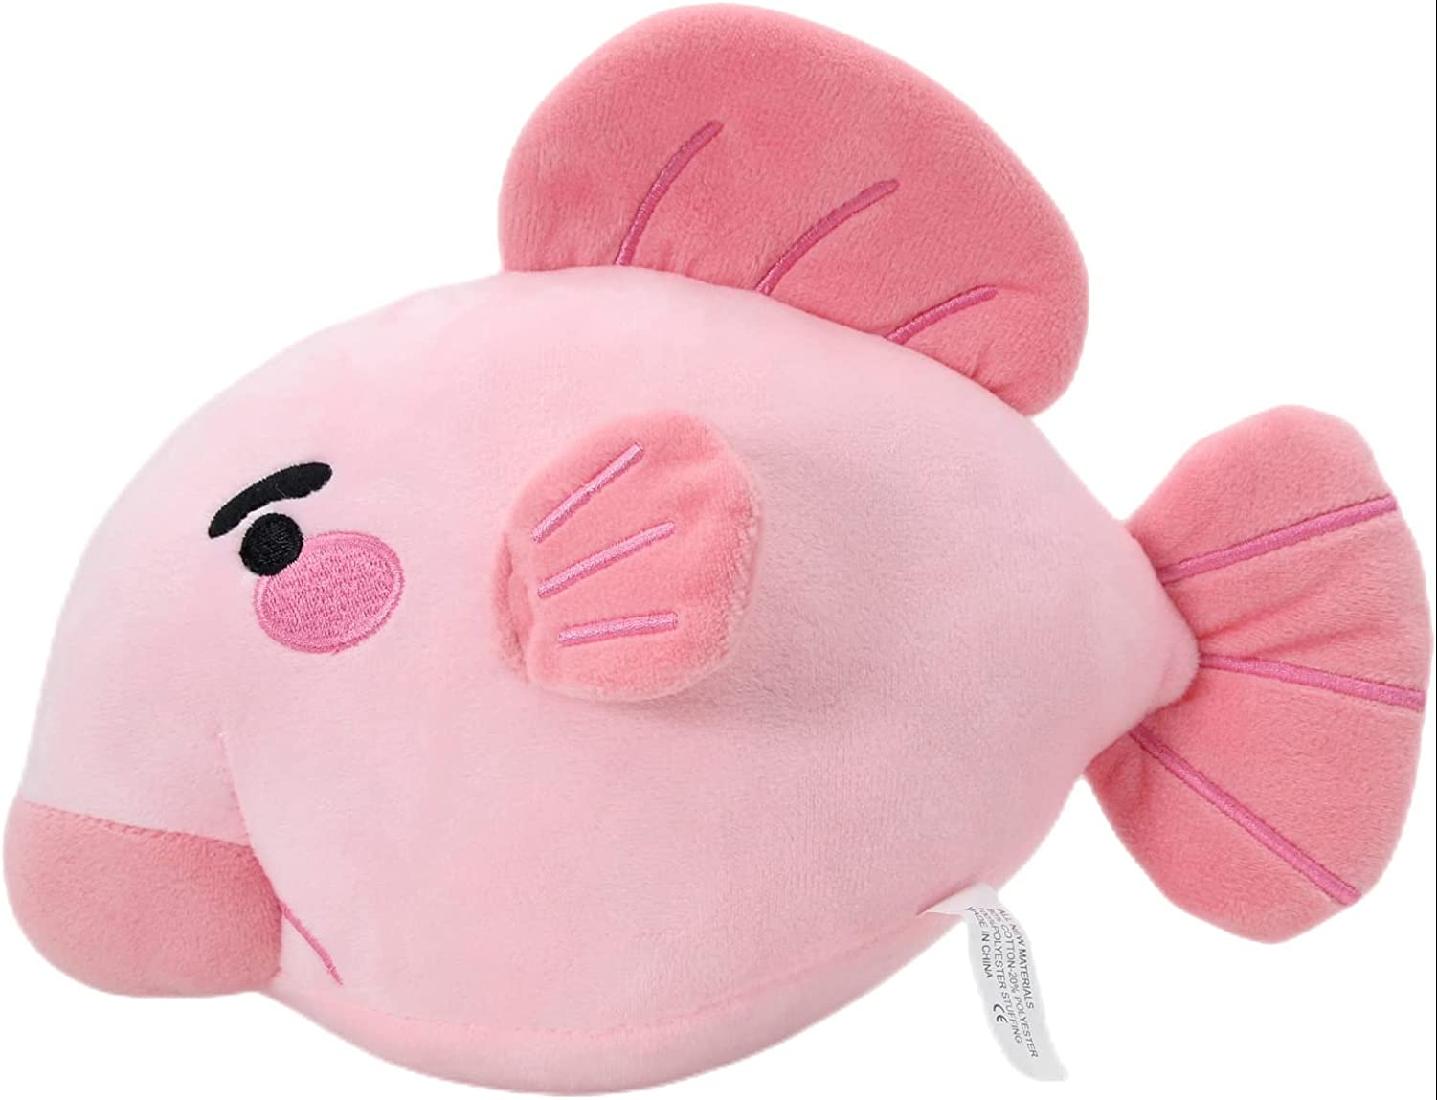 Blobfish Plush Pillow Cute Ugly Fish Blobfish Stuffed Animal